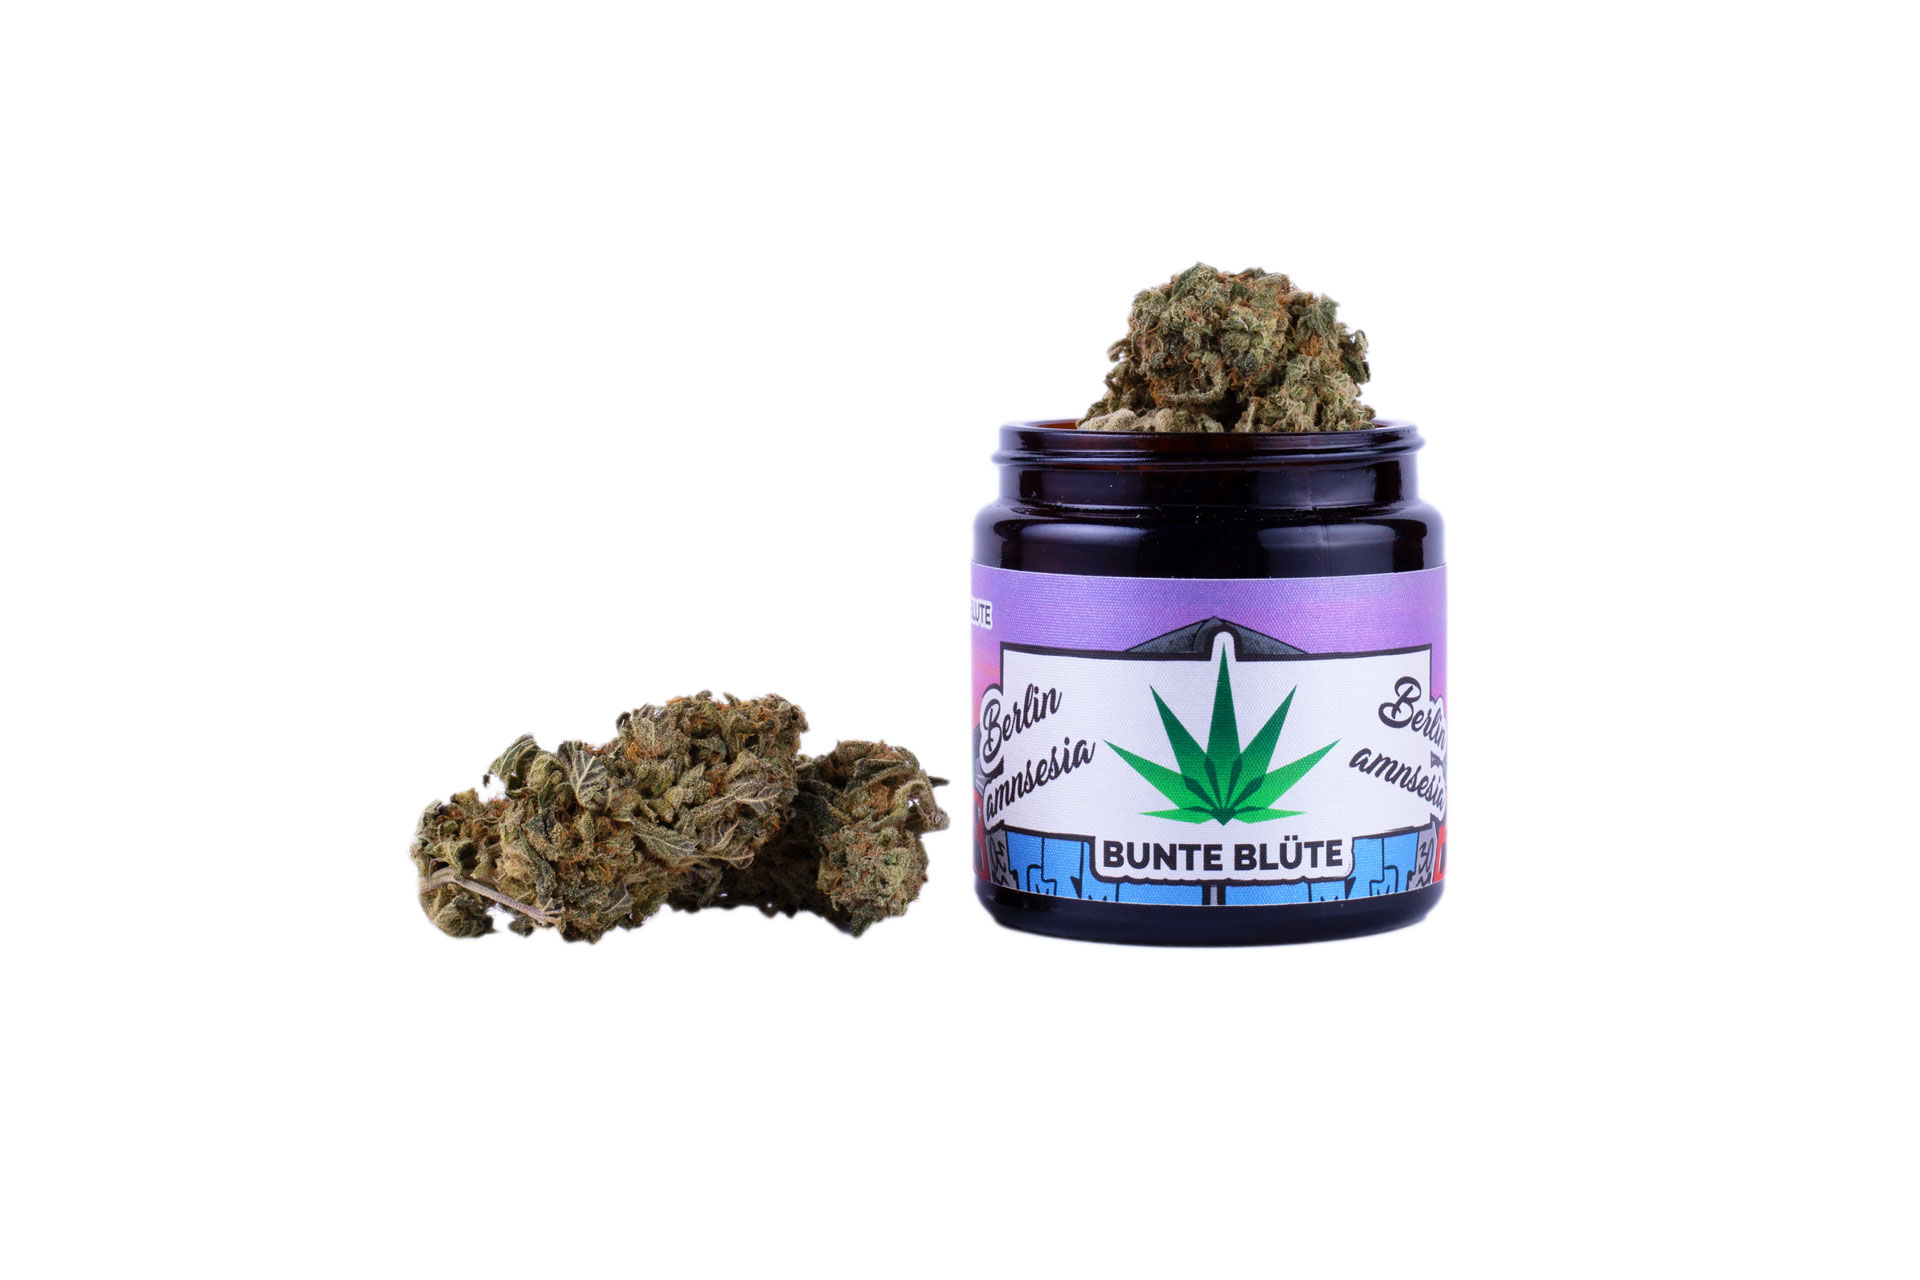 bunte-bluete-cbd-cannabis-berlin-amnesia-5gramm-glas-kaufen